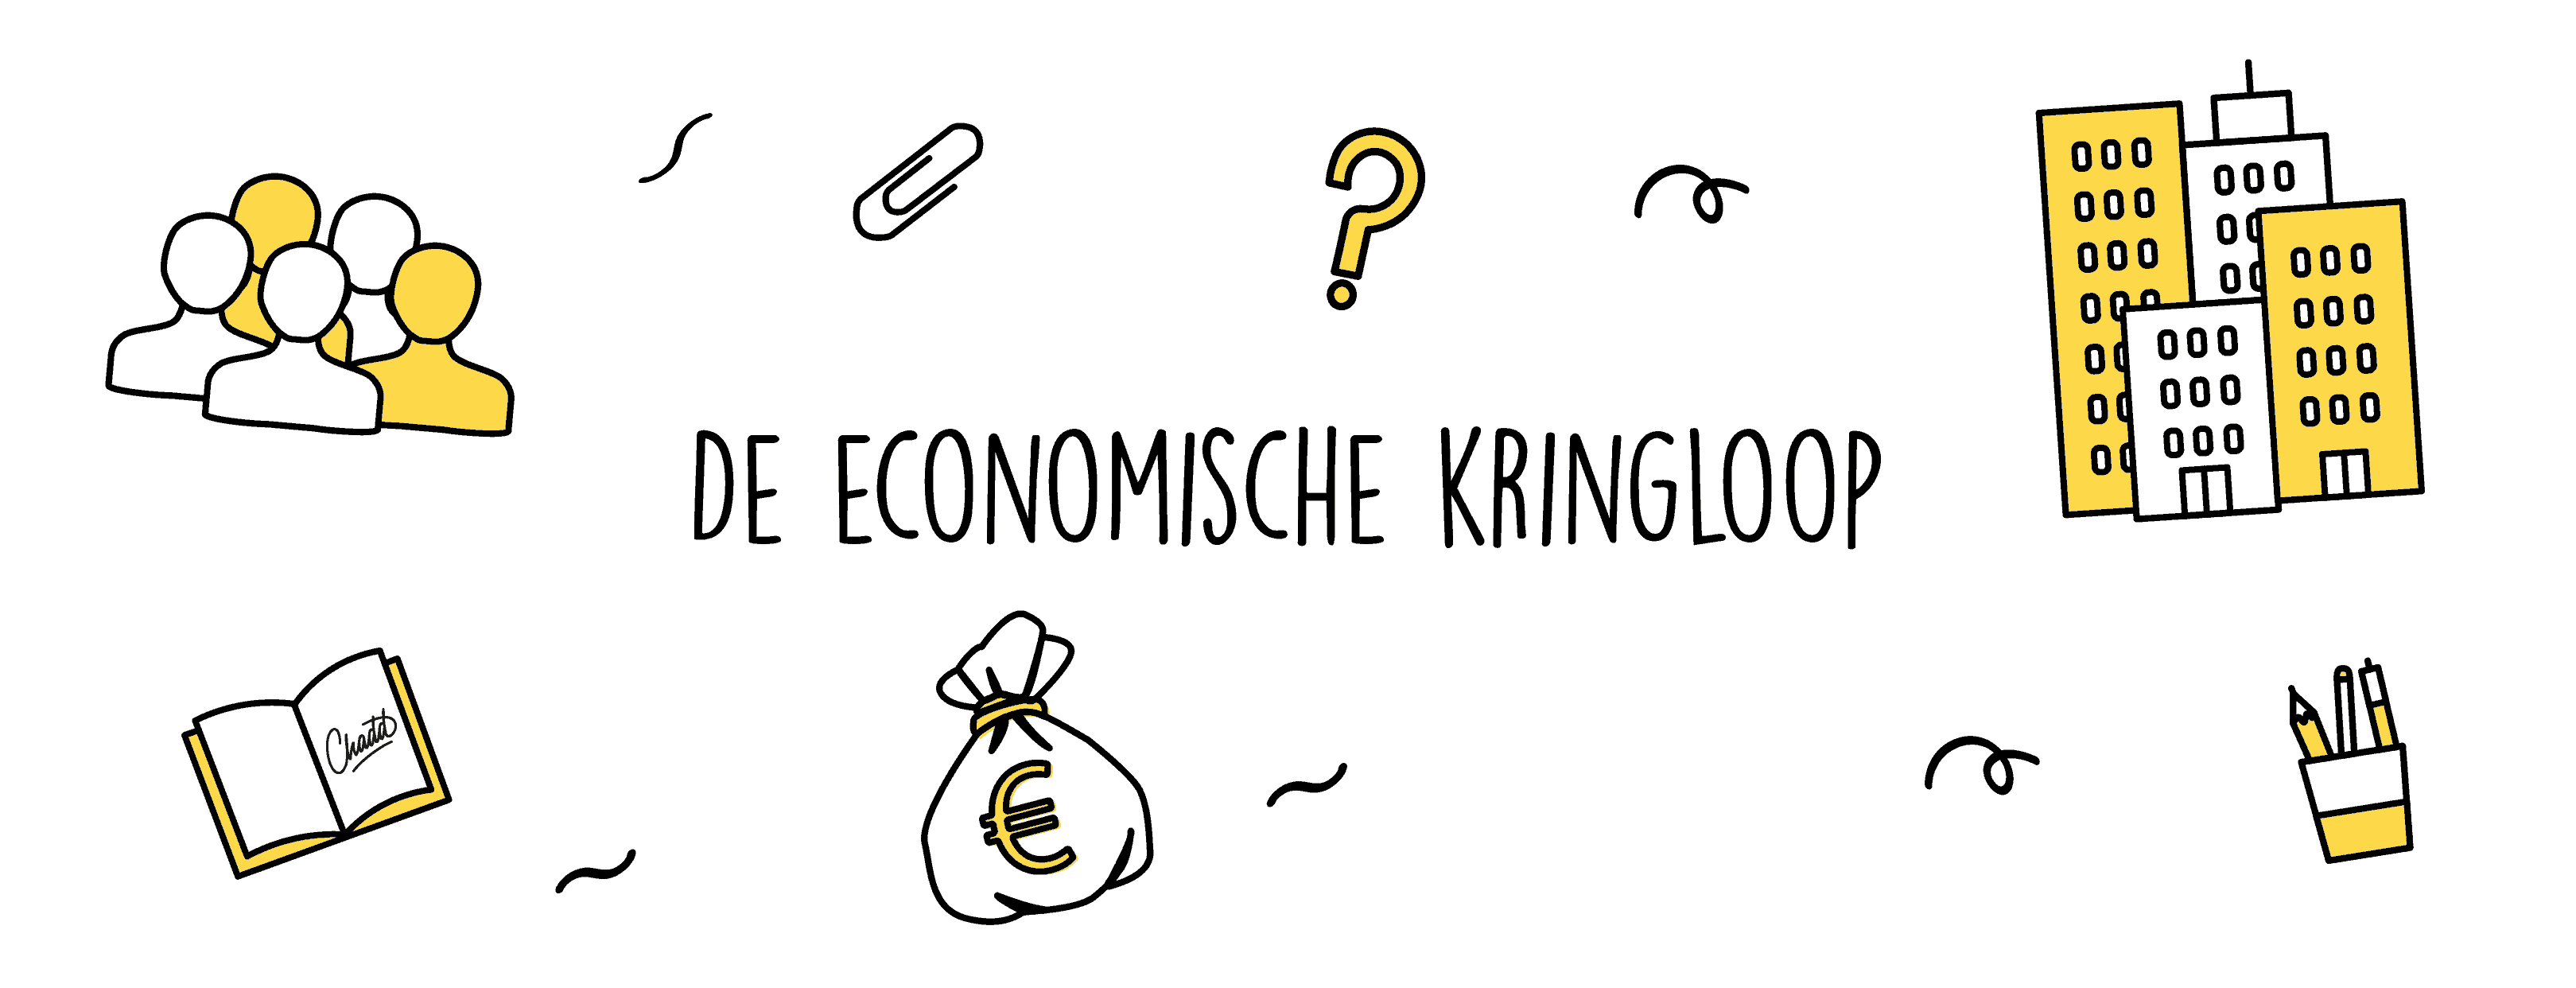 De economische kringloop